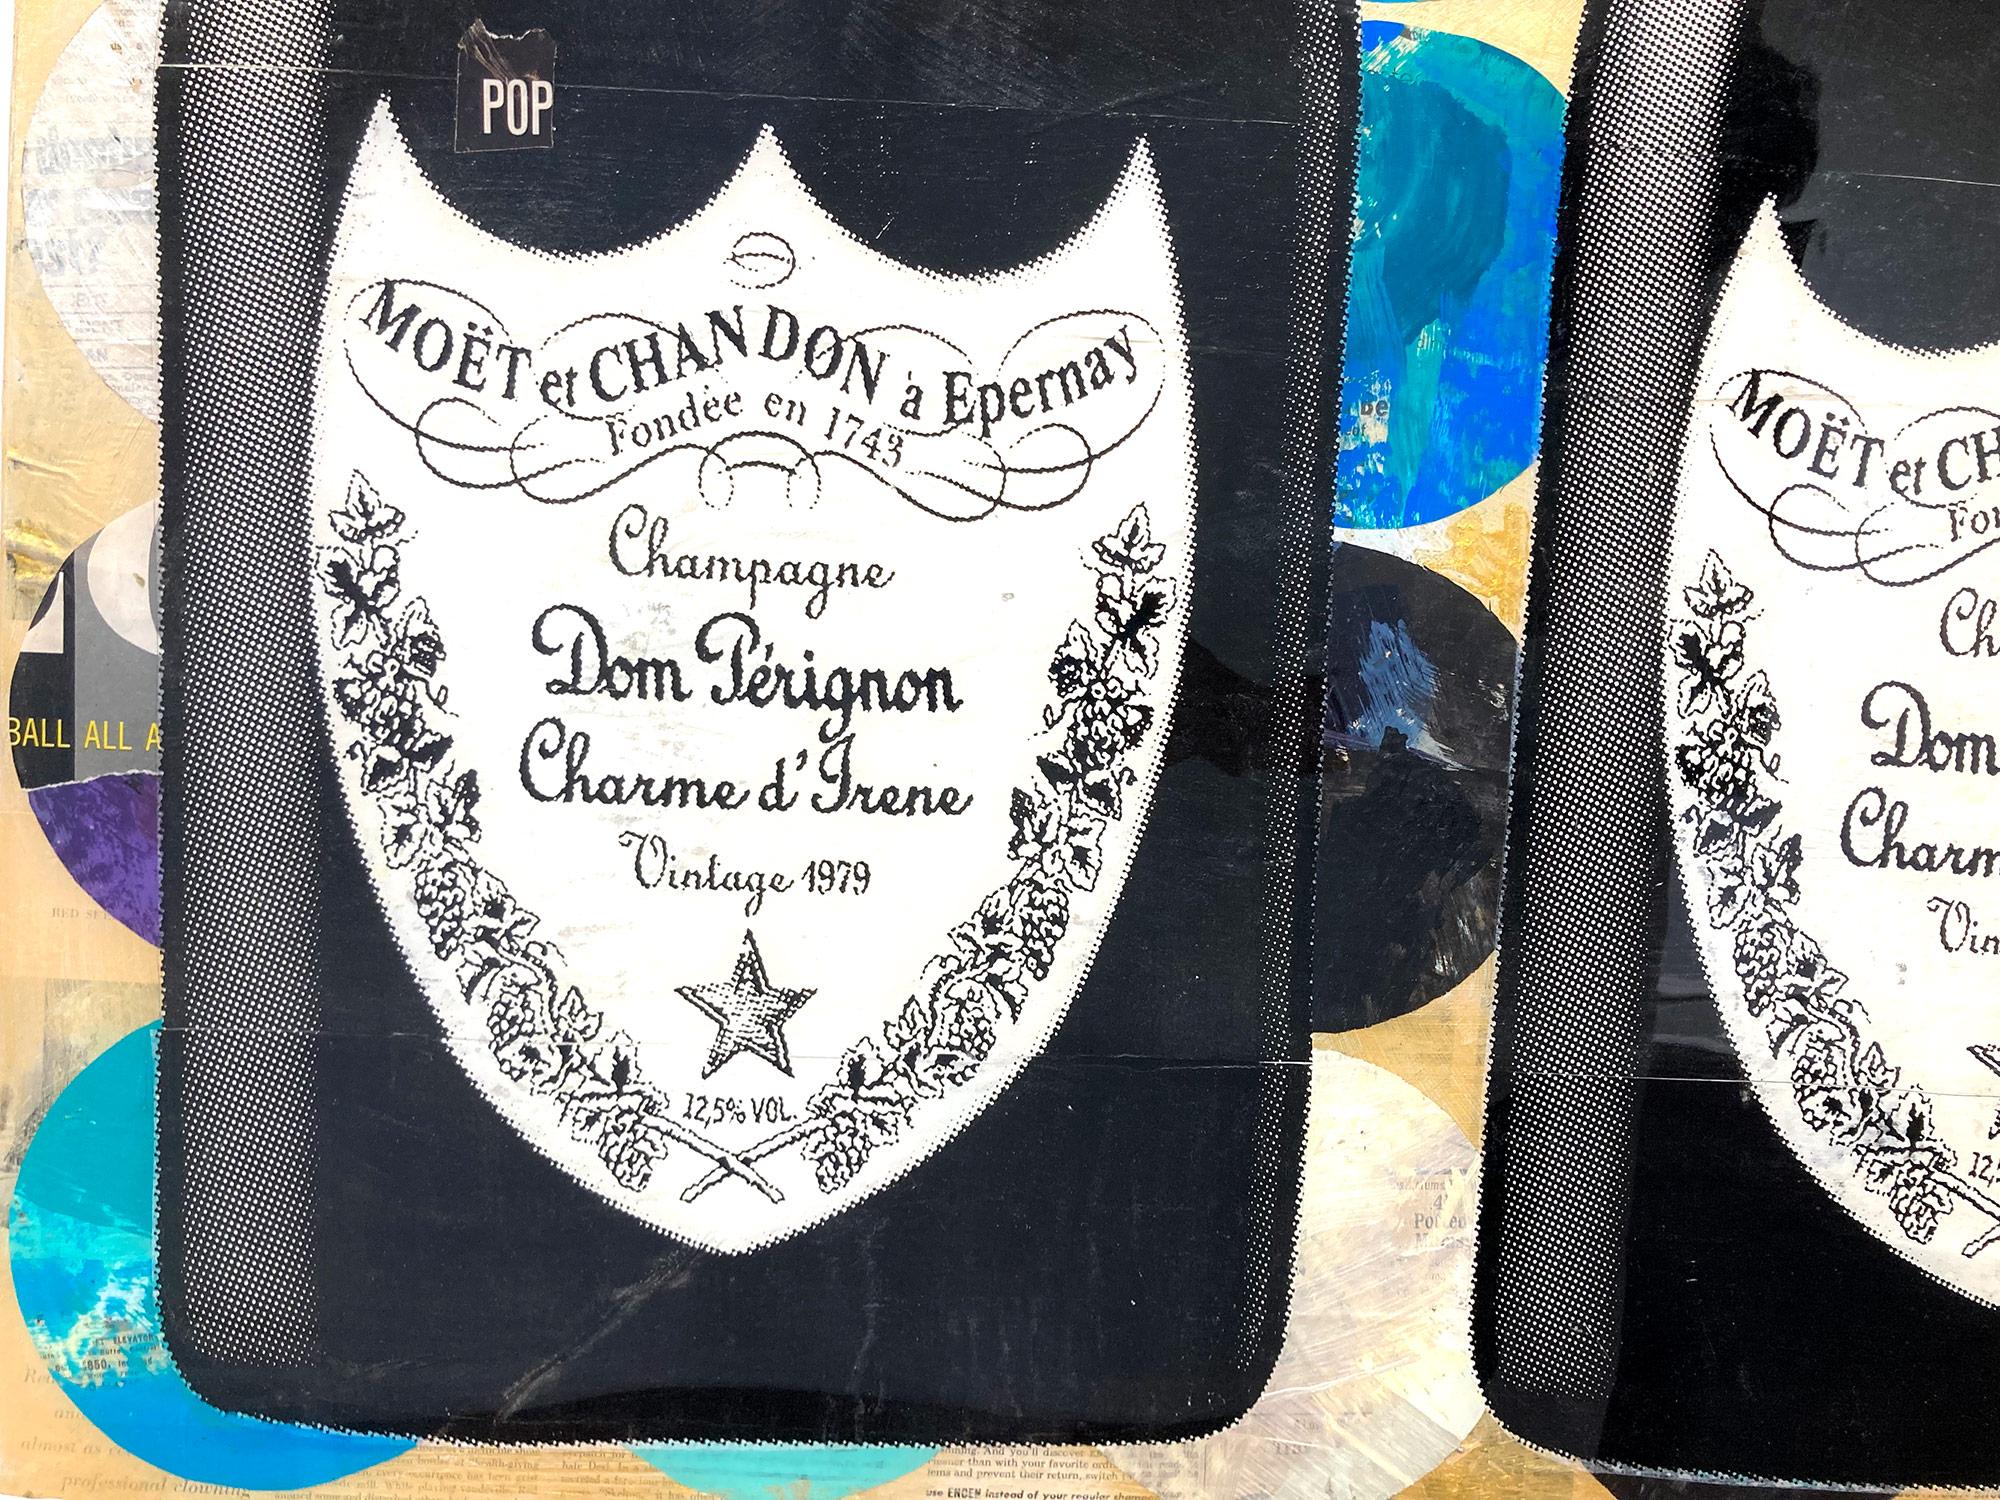 Dieses Stück stellt die berühmte Champagnerflasche DOM Pérignon dar. Er feiert diese ikonische Marke aus der Goldenen Ära mit ausdrucksstarken und kräftigen Farben, indem er diese Momente der Geschichte einfängt. Seine Gemälde dienen als Vehikel, um